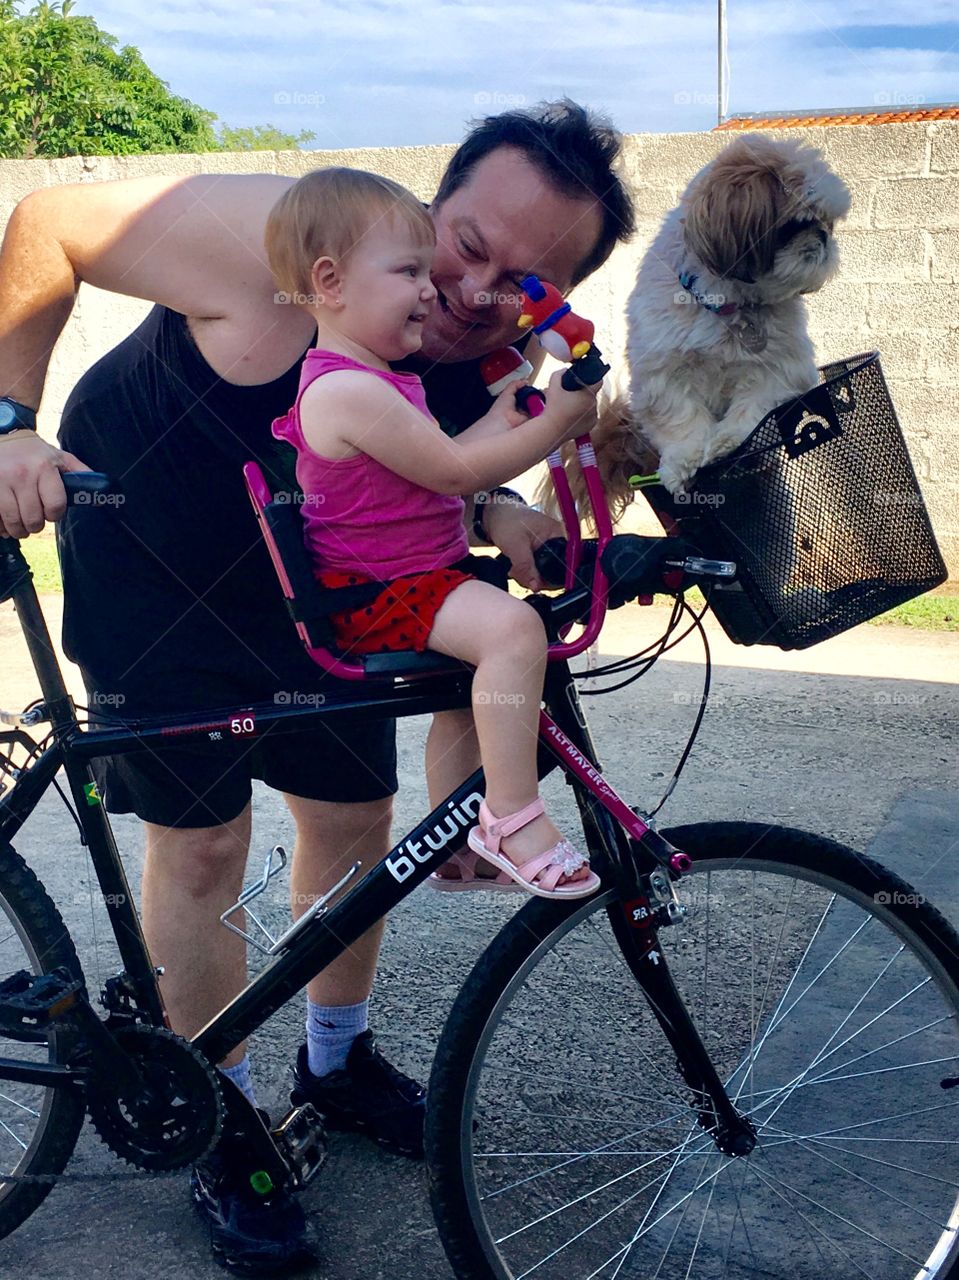 Quem quer pedalar?
O #pai, a #filha e a #cachorrinha andando de #bicicleta. Muita #diversão!
🚲
#dog #cachorro #bike #família #pet #pedal 
#PaiDeMenina